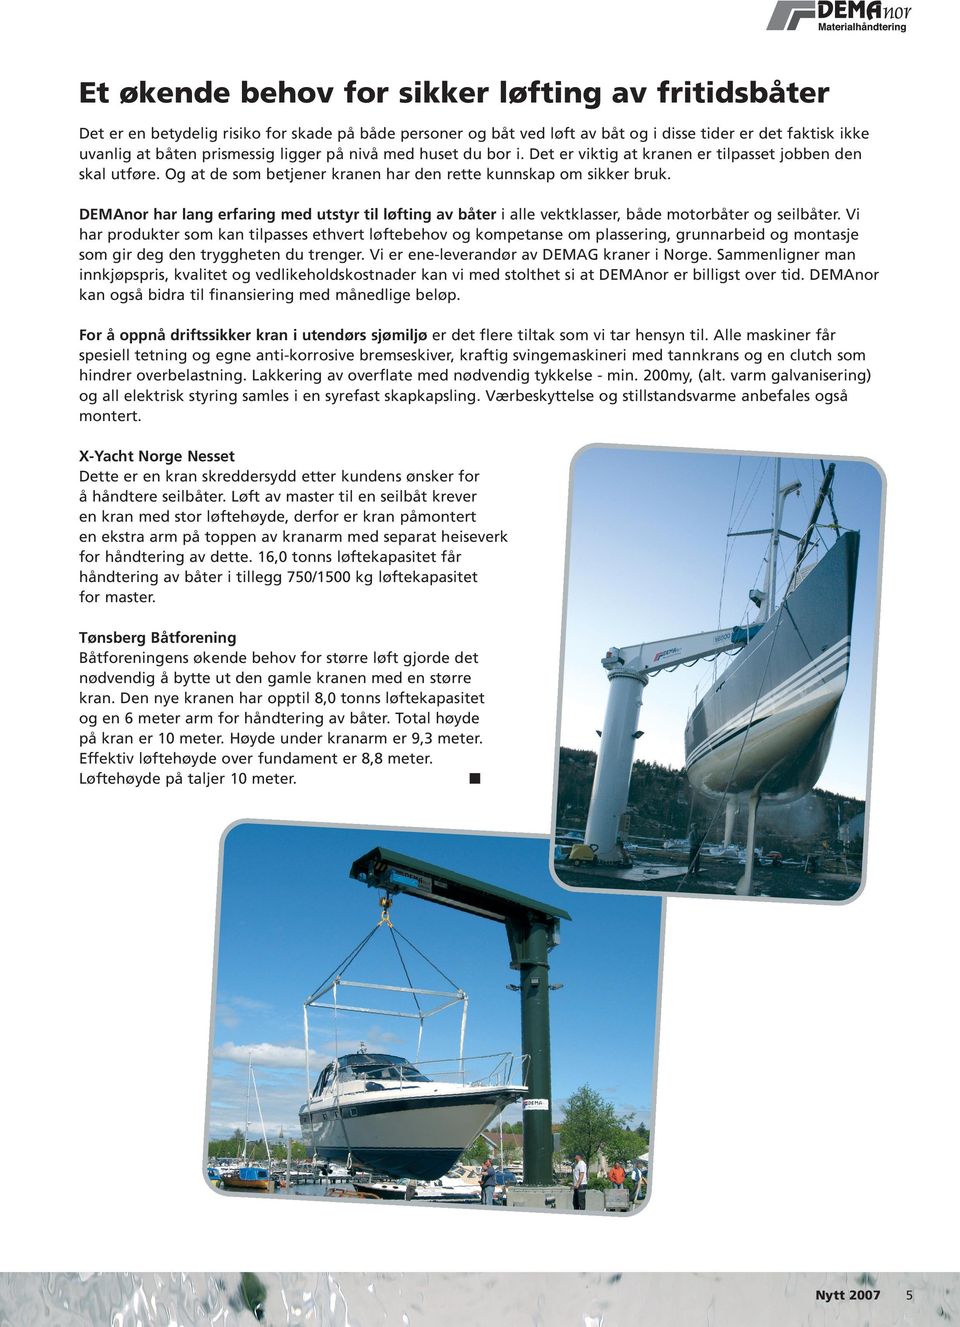 DEMAnor har lang erfaring med utstyr til løfting av båter i alle vektklasser, både motorbåter og seilbåter.